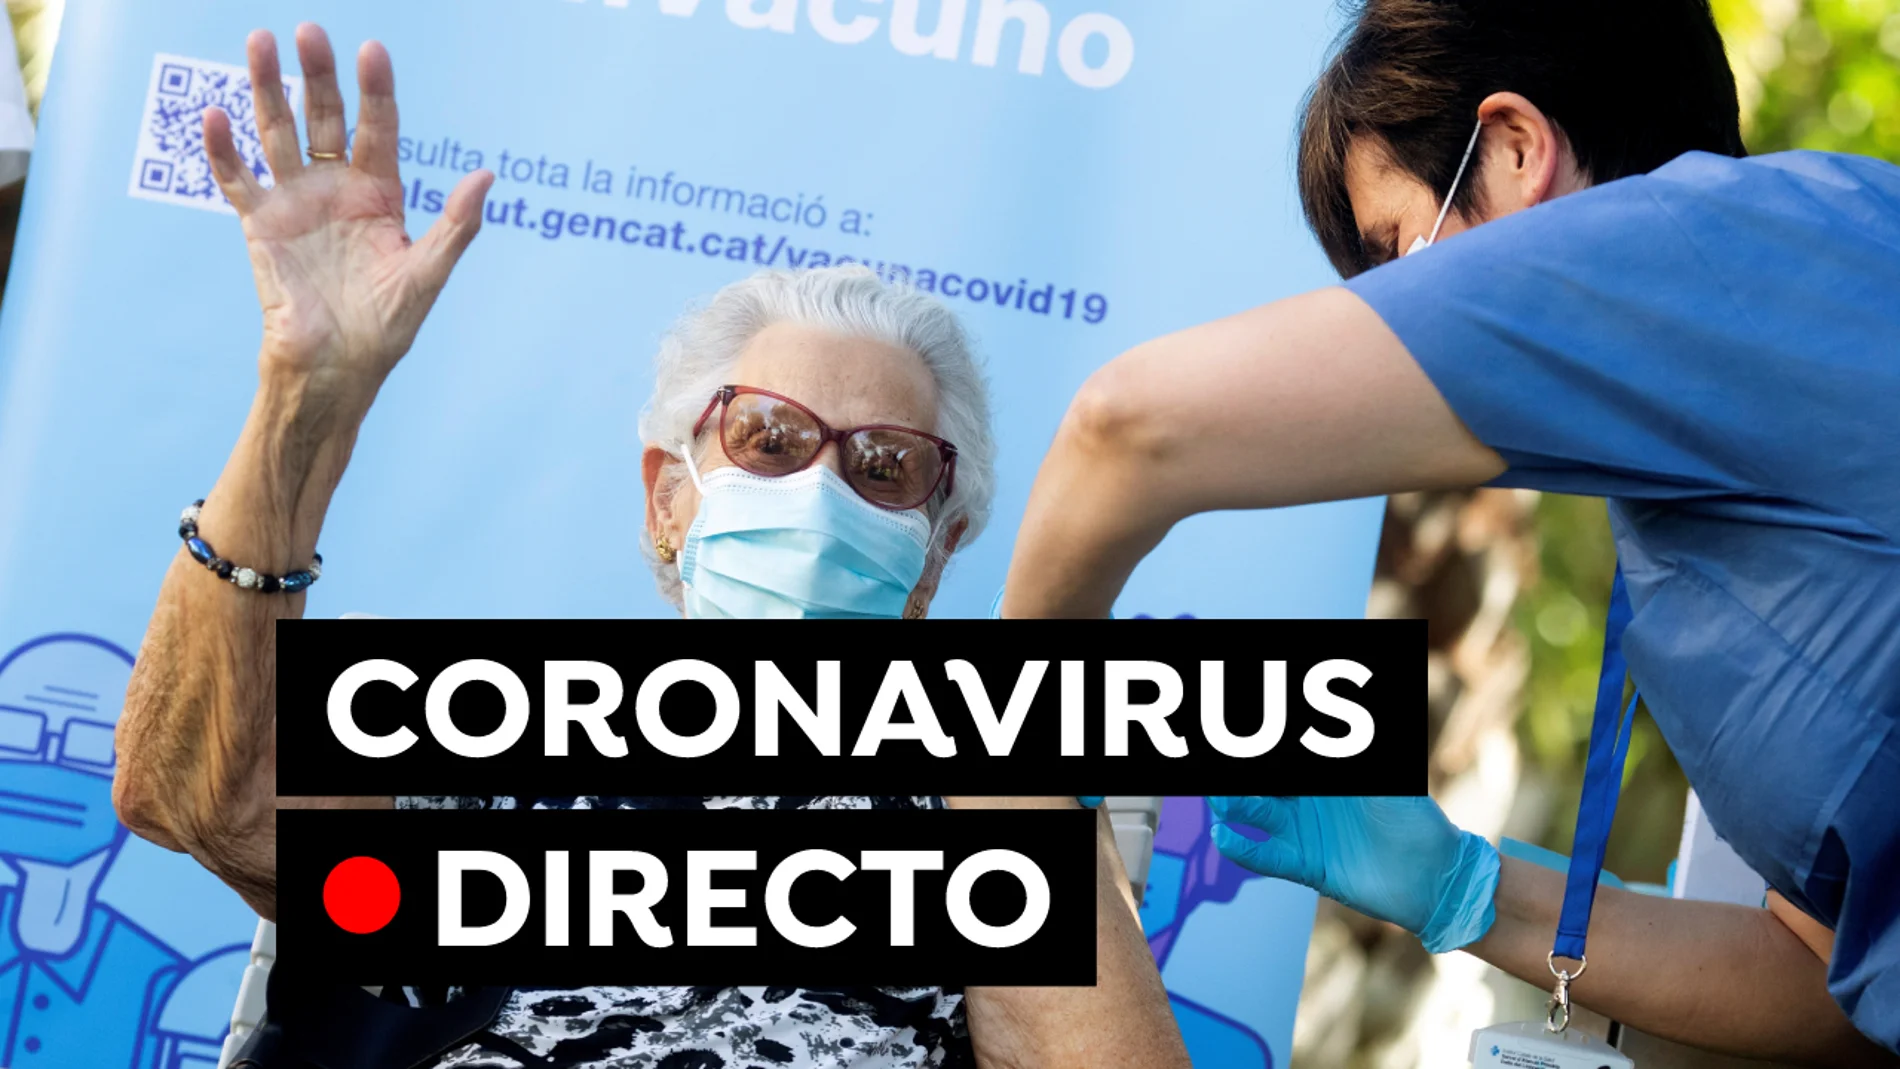 COVID-19 hoy: Vacuna y certificado covid y última hora de restricciones en Madrid, Cataluña, Andalucía, en directo